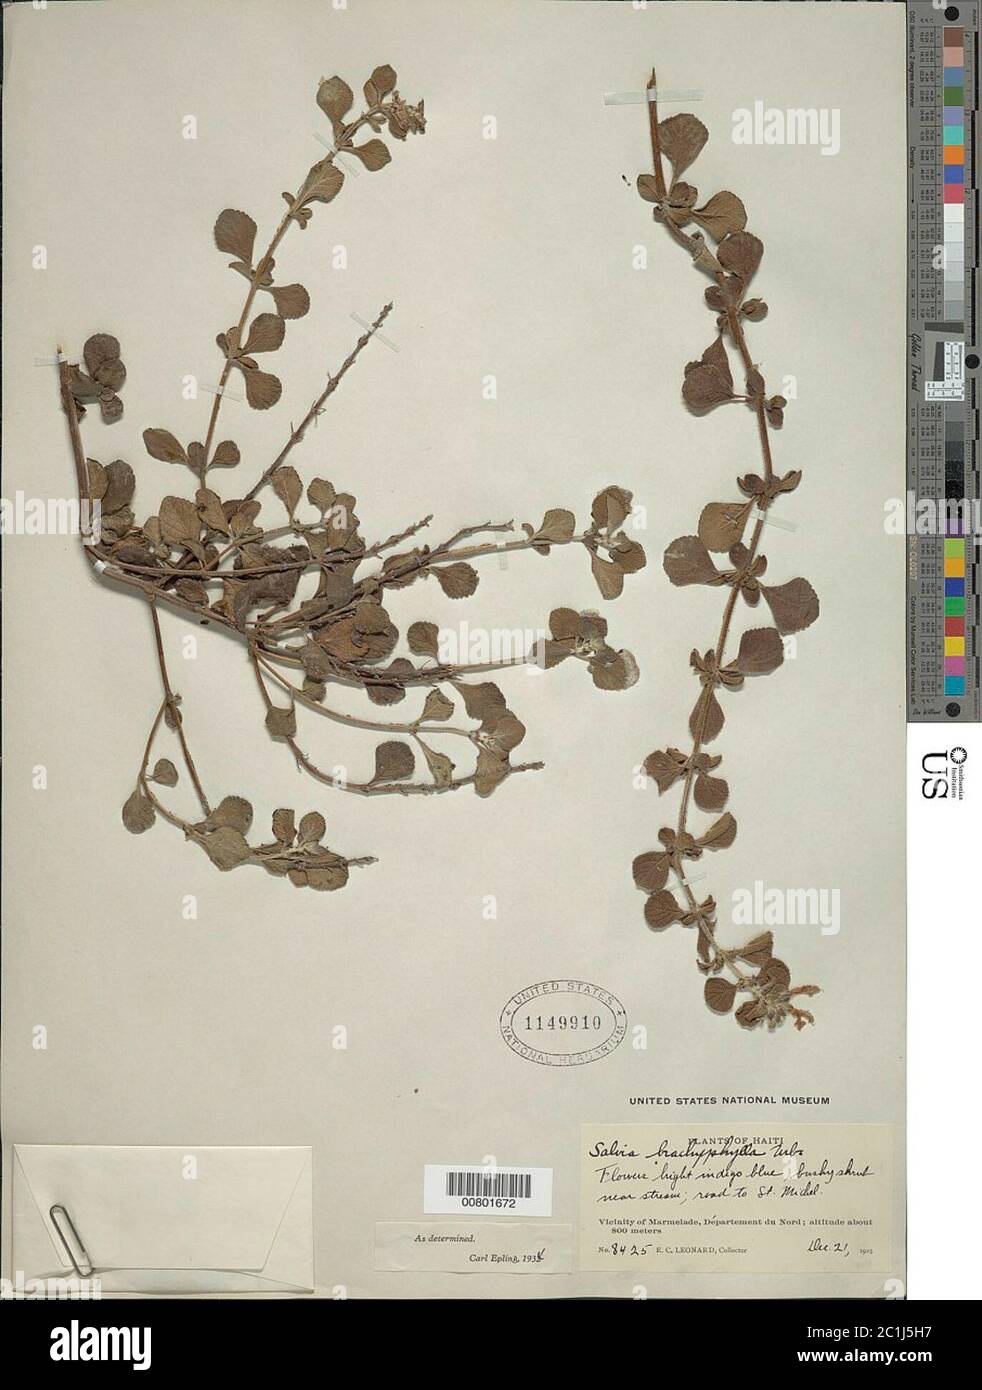 Salvia brachyphylla Urb Salvia brachyphylla Urb. Stock Photo